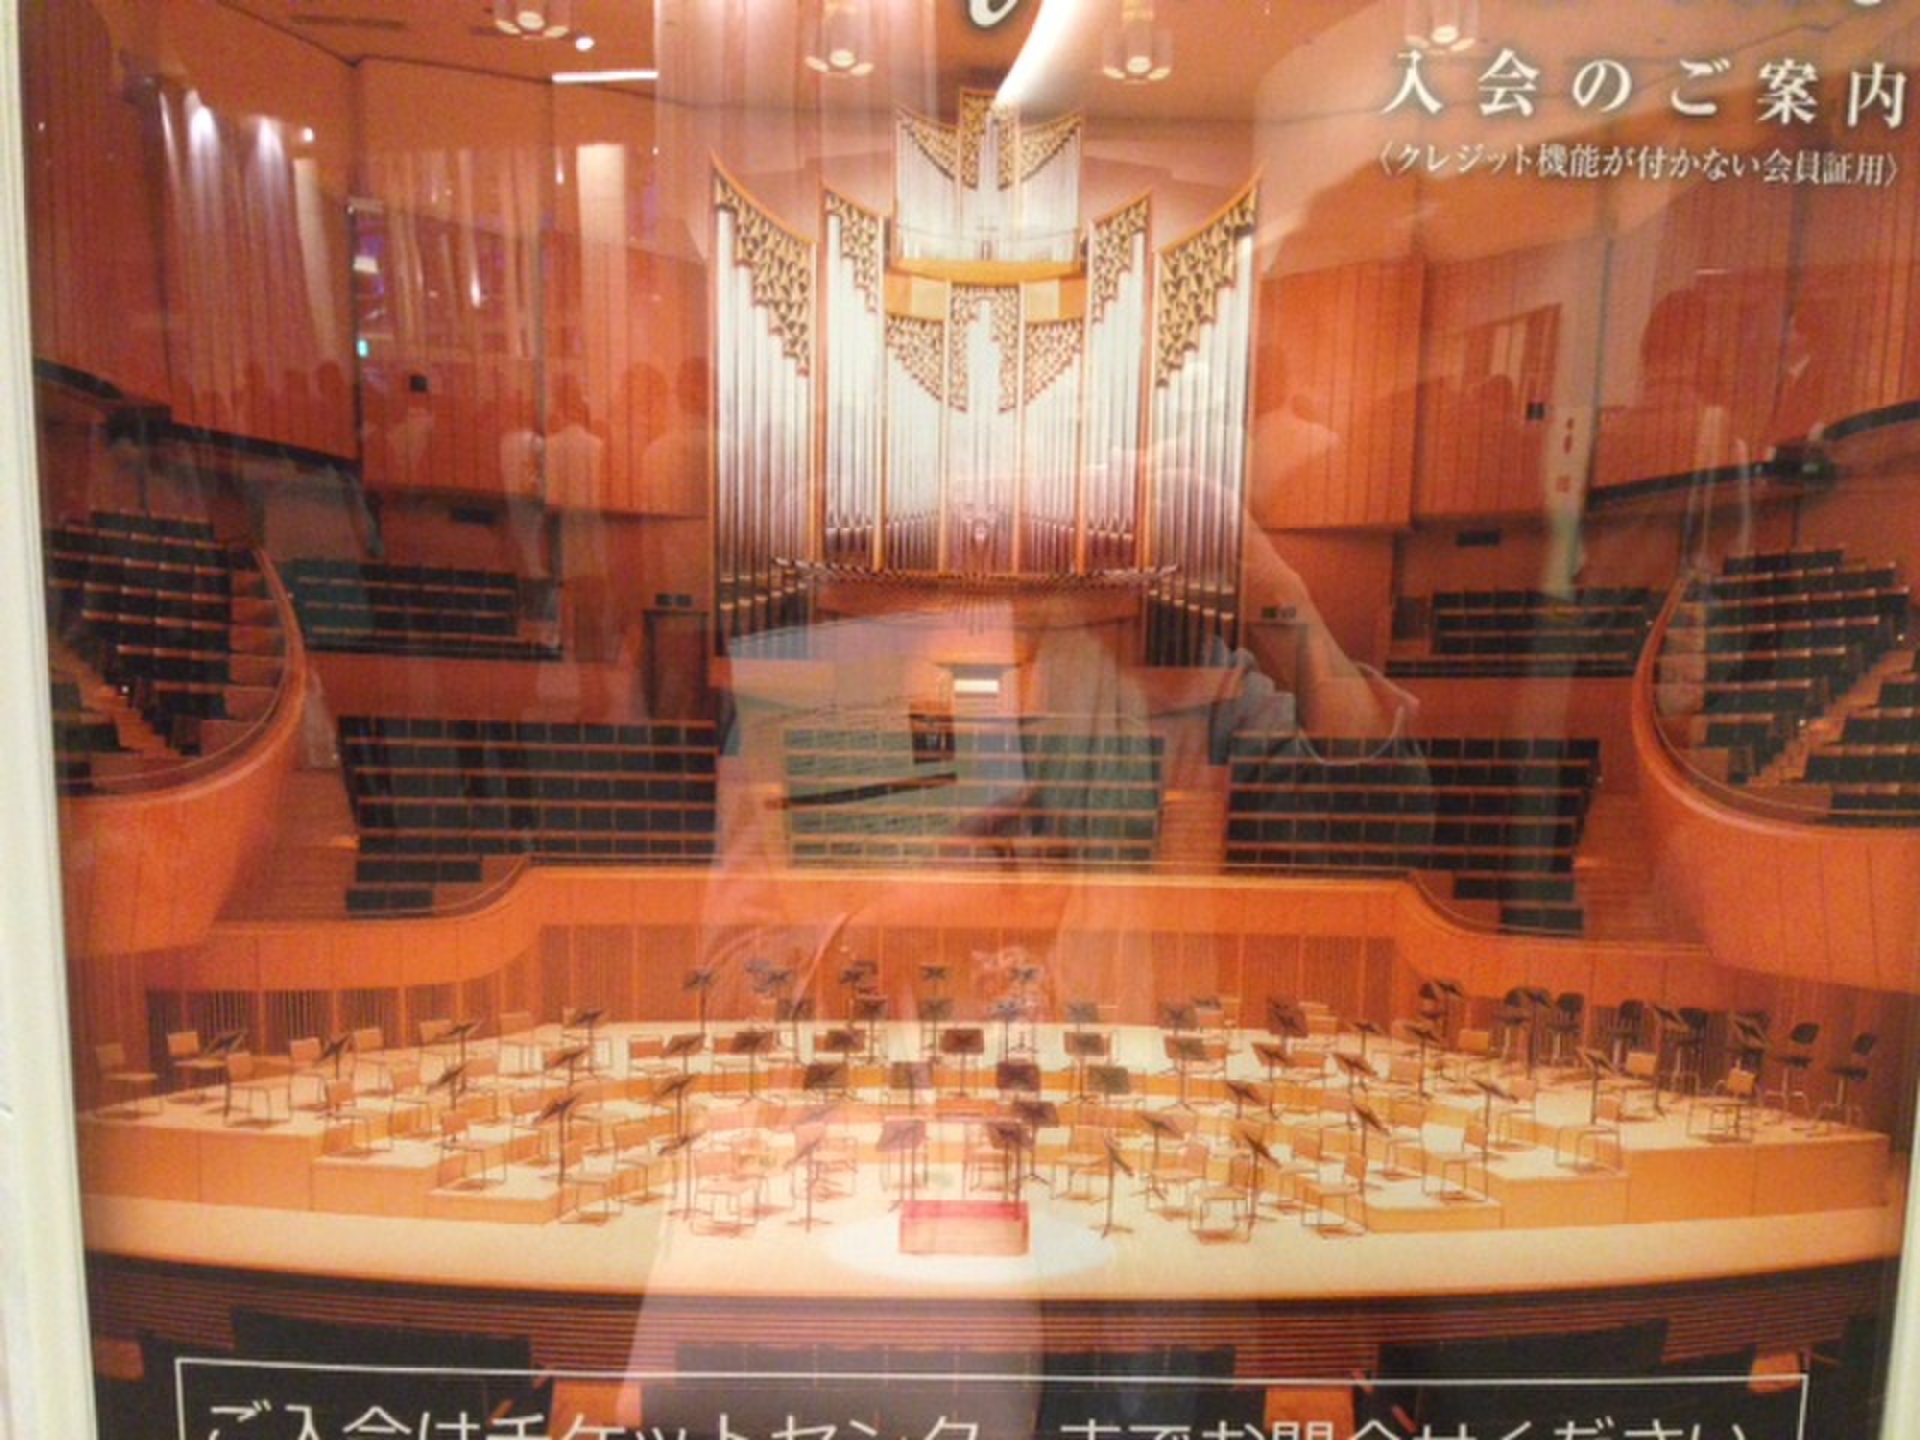 【札幌】パイプオルガンの本格クラシックを気軽に聴ける♪500円コンサートが盛況♪「Kitara」